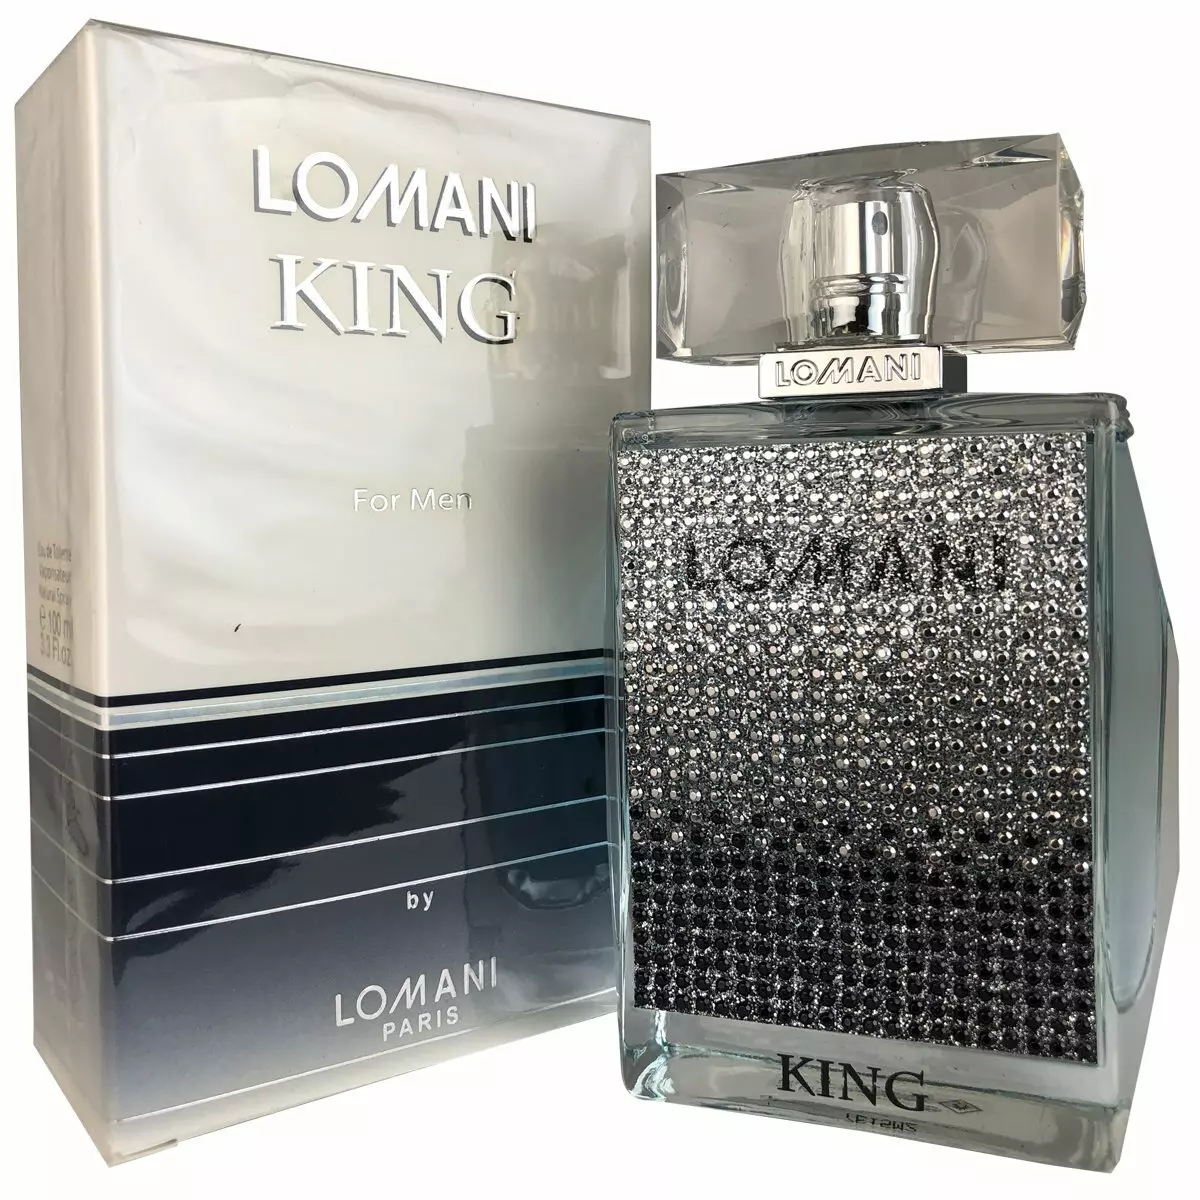 Parfume Lomanei: Mænds og Women's Eau de Toilette, Elitis, Best og Miss Lomani, tips til valg af parfume 25168_3